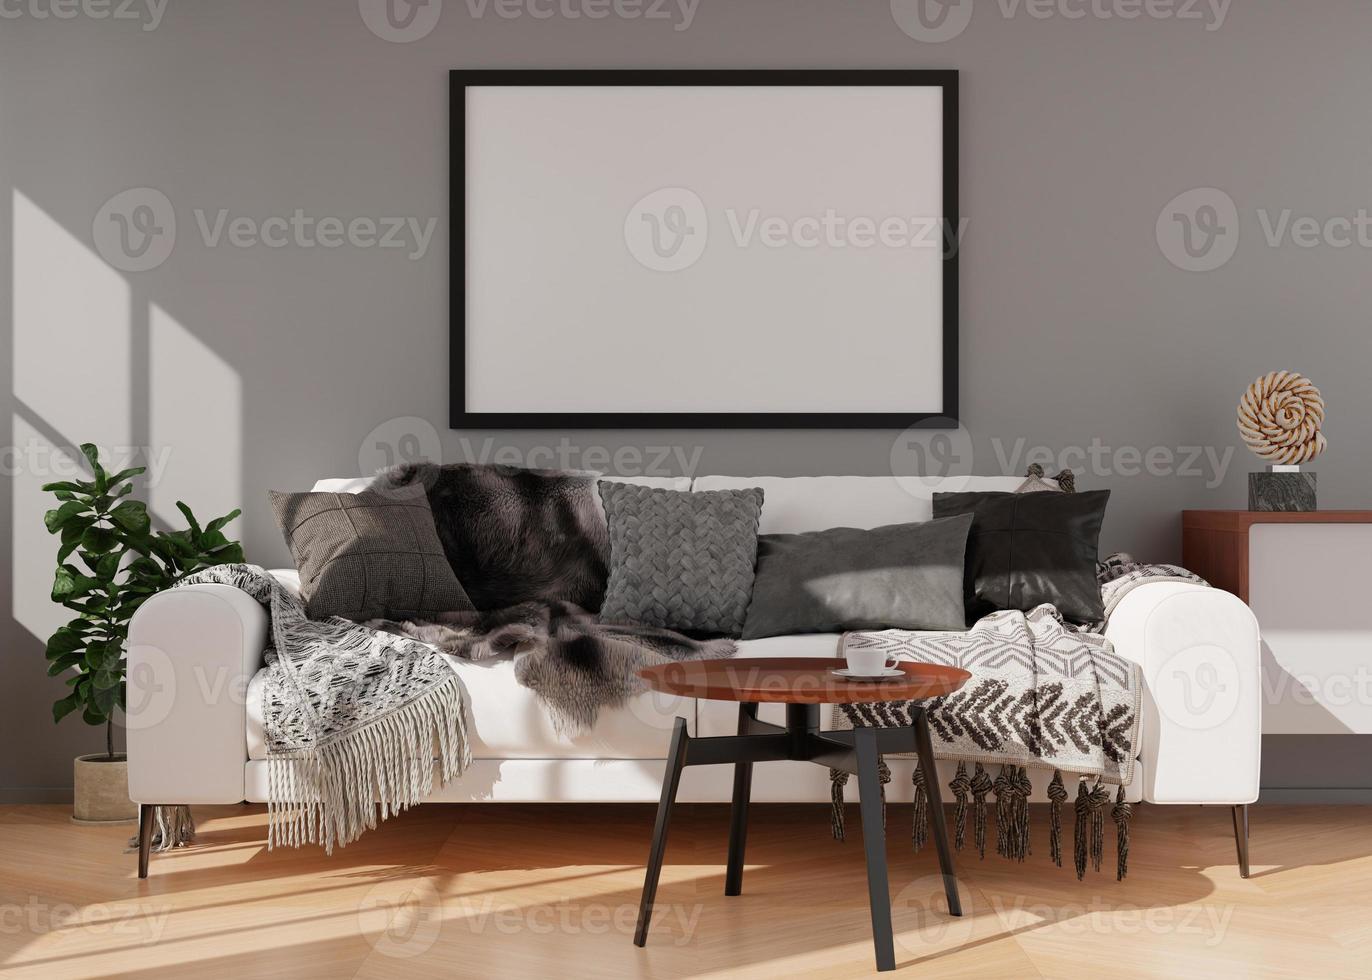 moldura preta vazia na parede cinza na moderna sala de estar. mock up interior em estilo contemporâneo. espaço livre, copie o espaço para sua foto, cartaz. sofá, aparador, planta. renderização 3D. foto